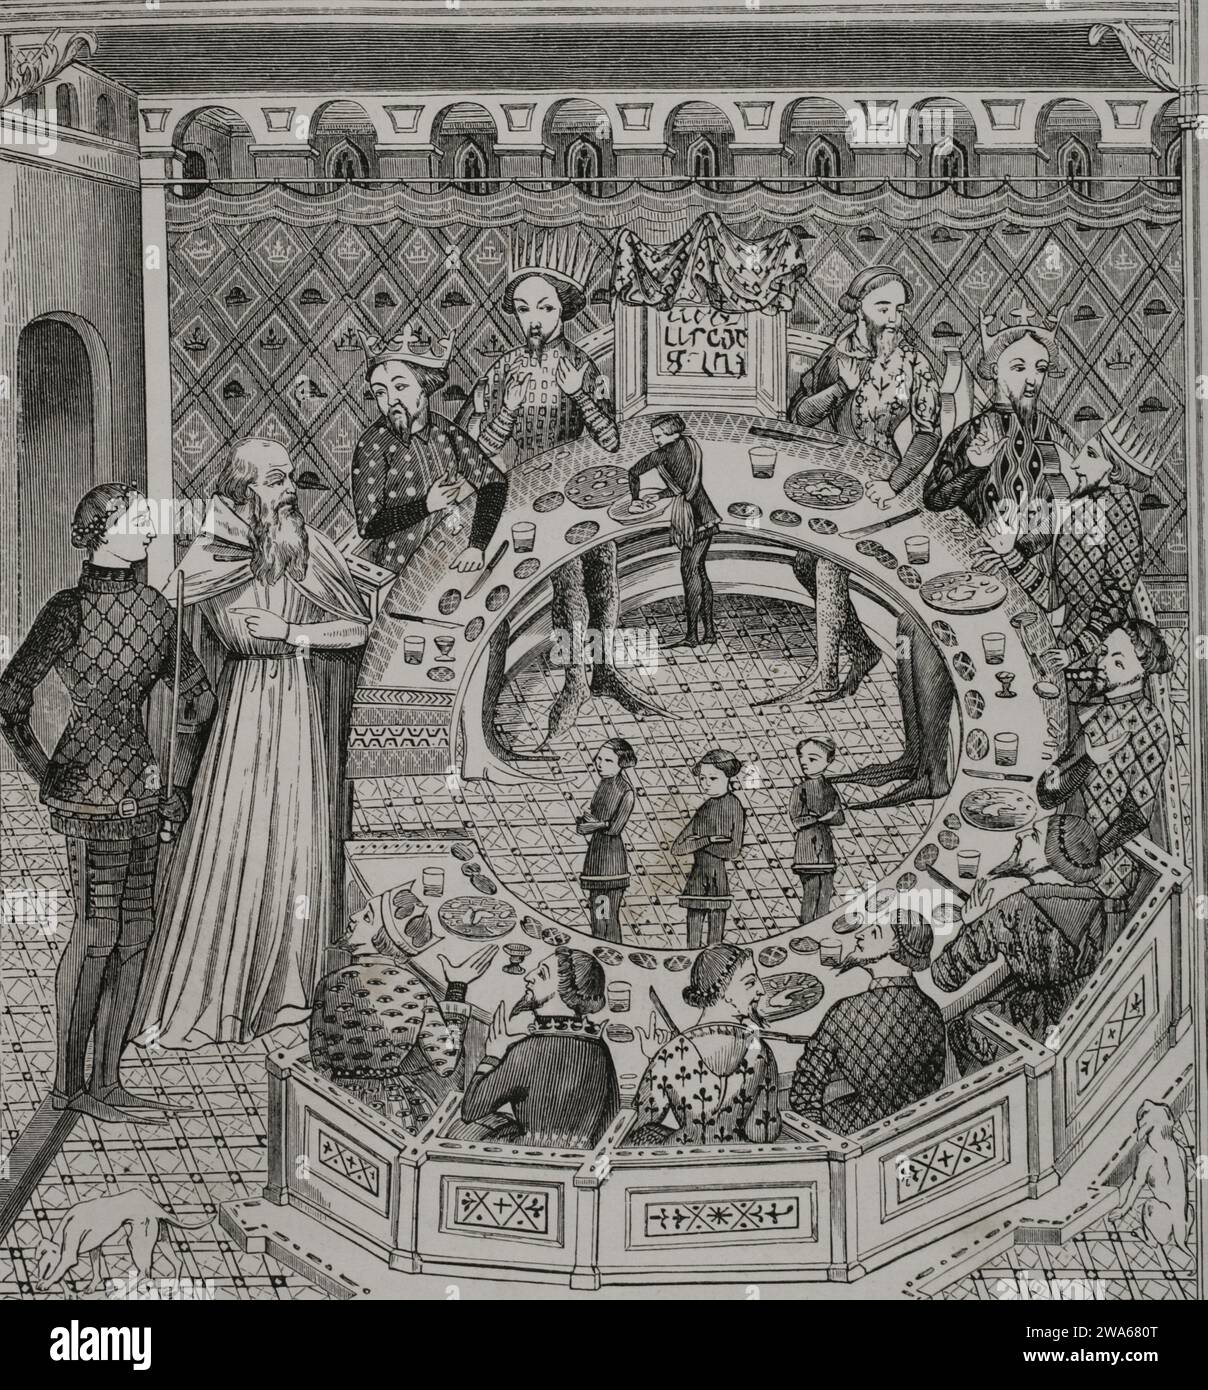 King Arthur's Round Table. Engraving from a 14th-century miniature. 'Les Arts au Moyen Age et a l'Epoque de la Renaissance', by Paul Lacroix. Paris, 1877. Stock Photo